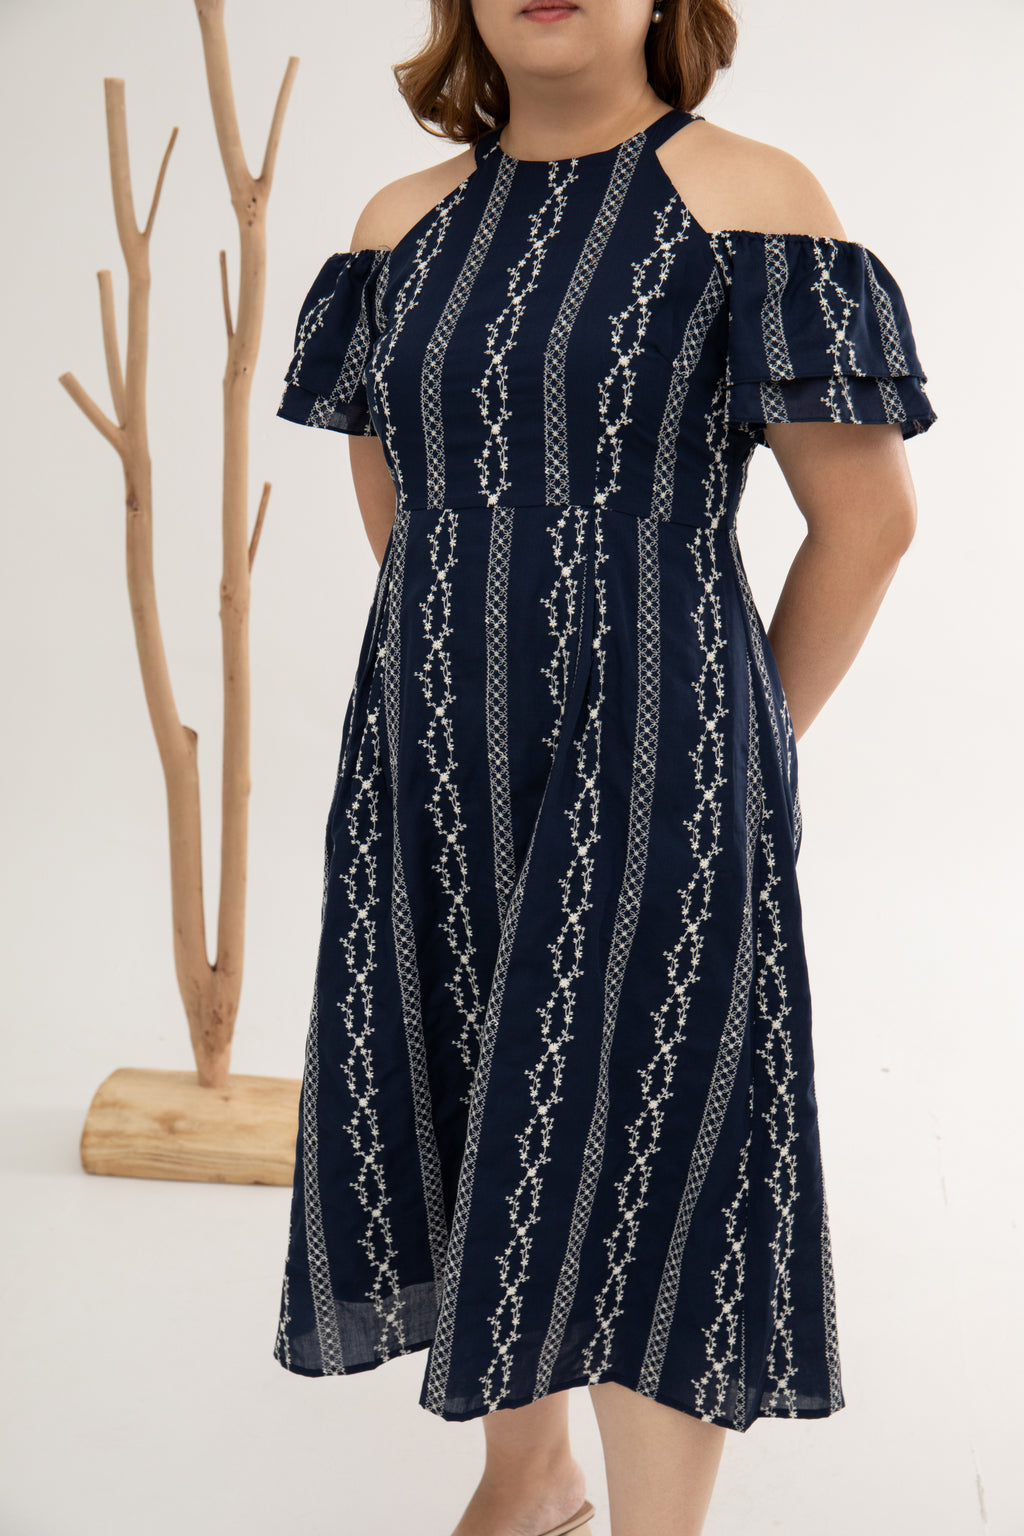 Colette Cold Shoulder Dress (Embroidery)